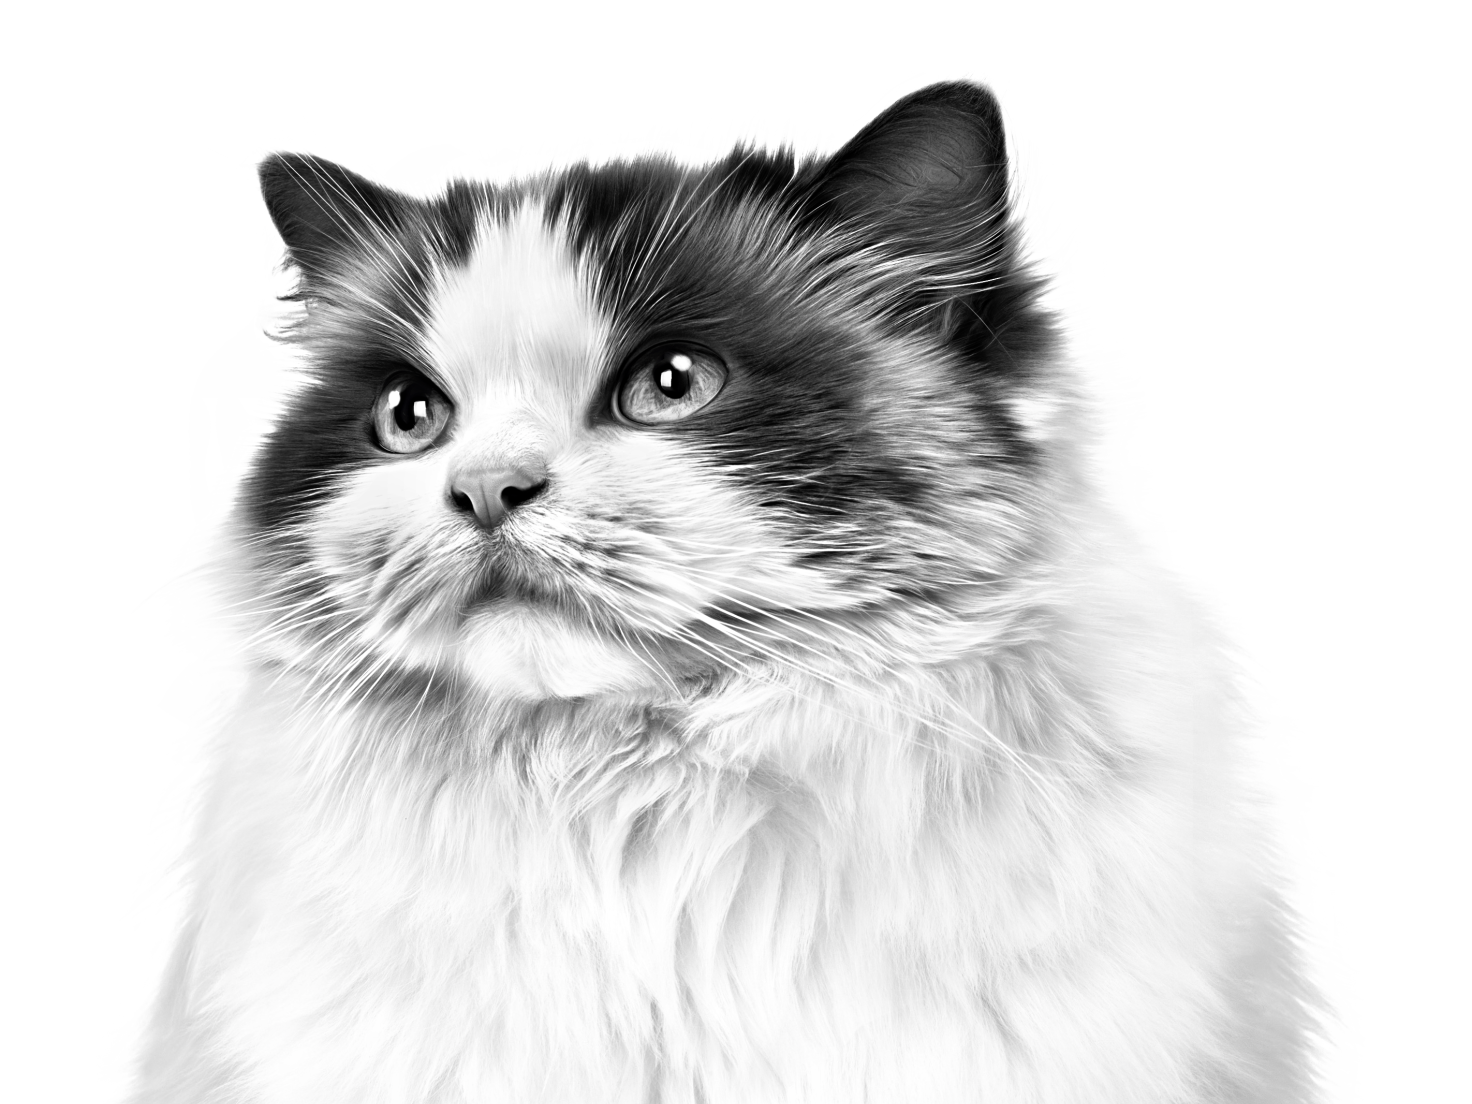 Retrato en blanco y negro de un gato Ragdoll